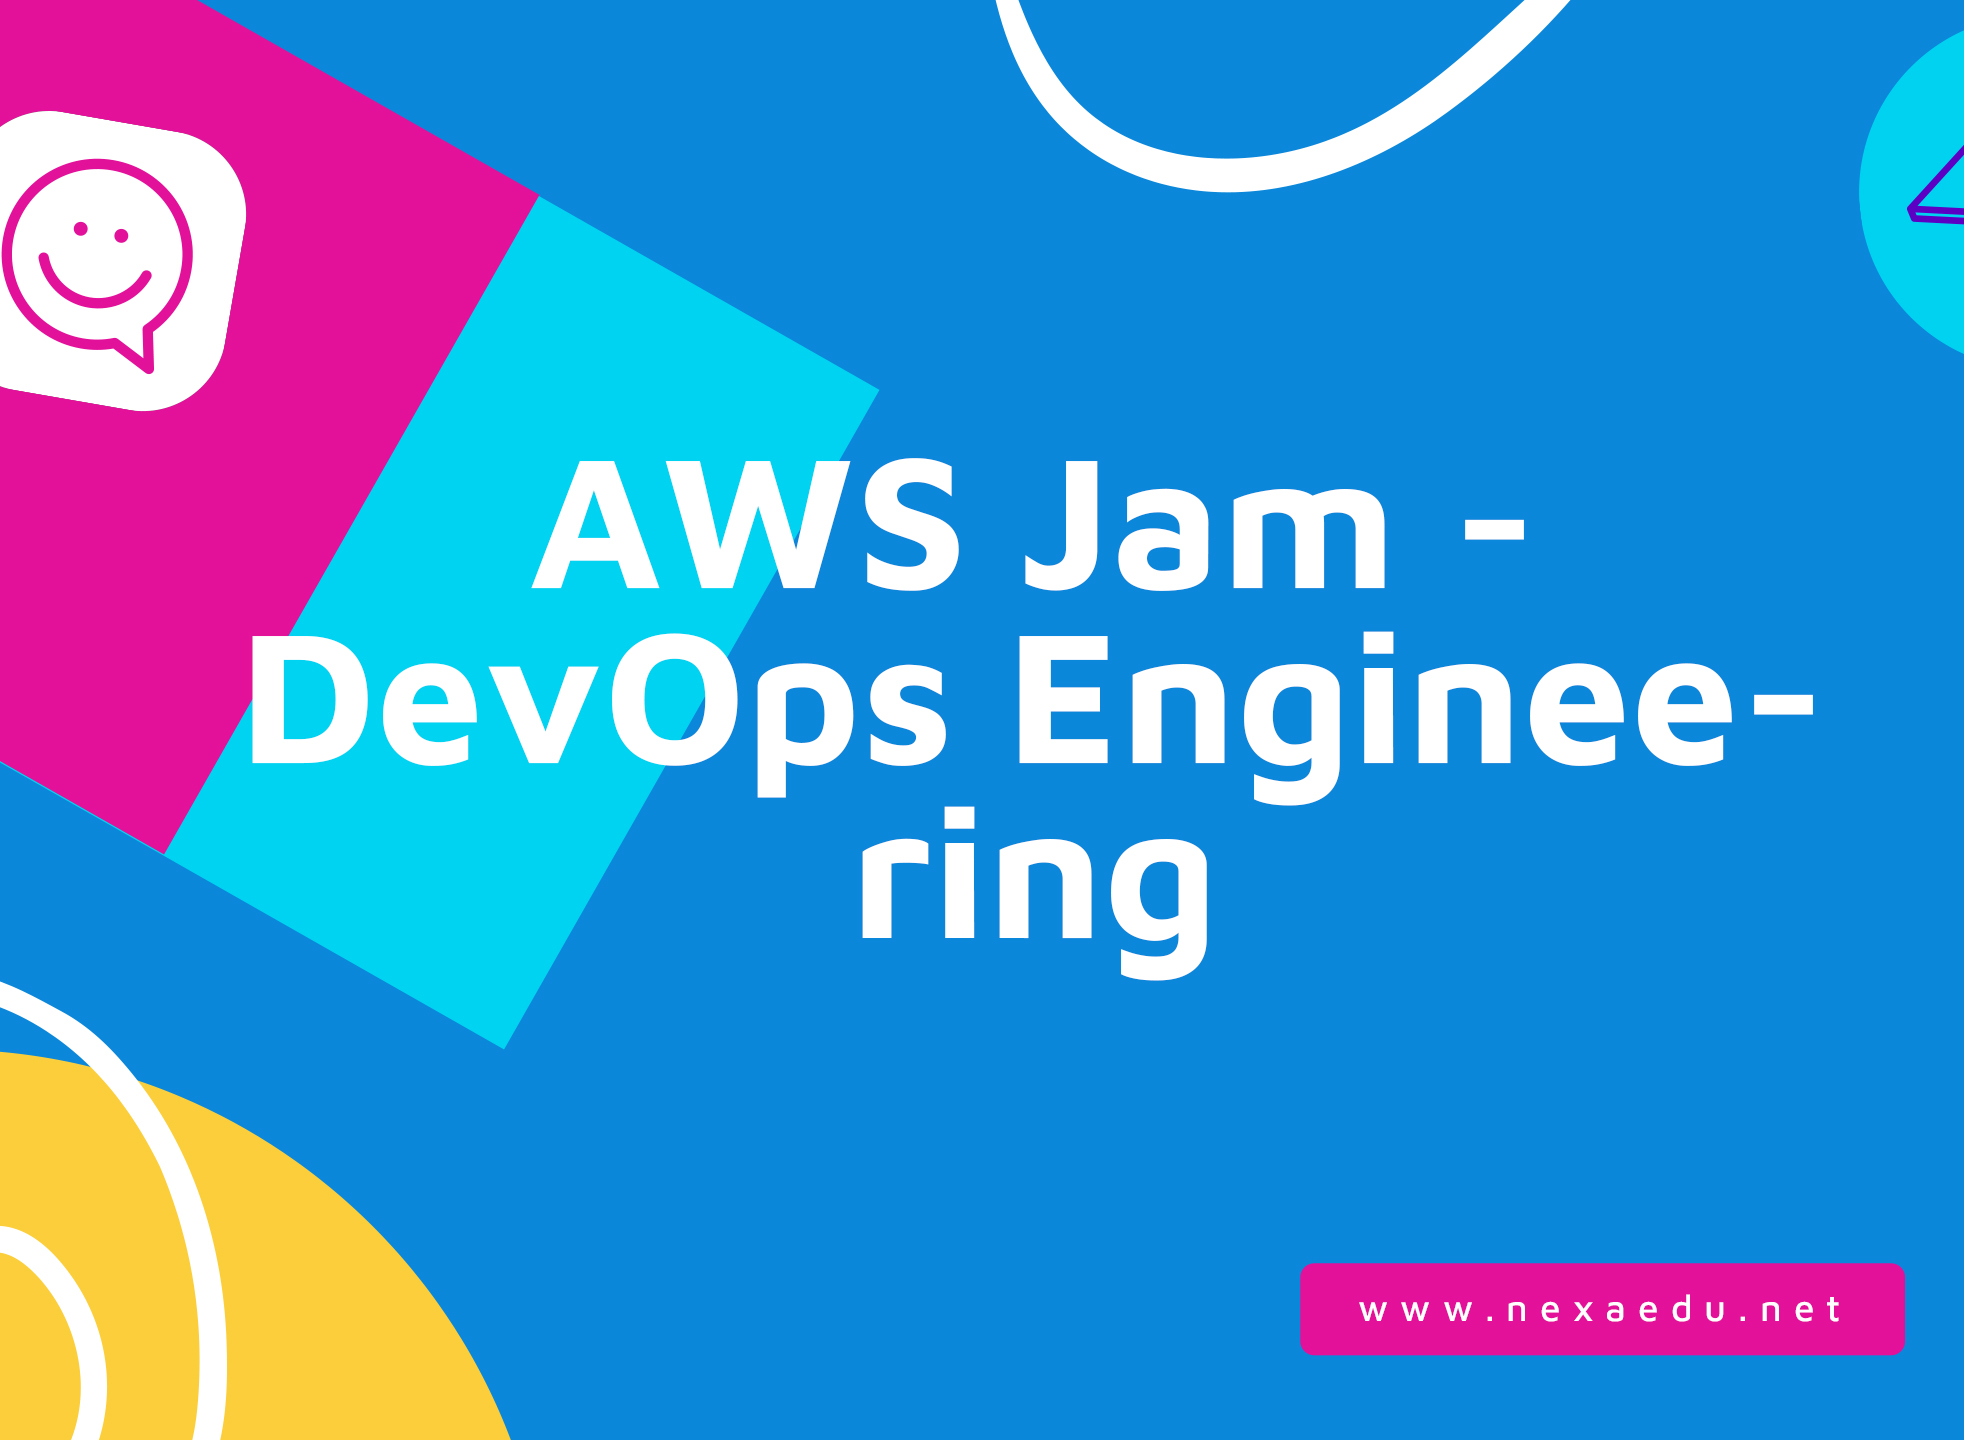 AWS Jam - DevOps Engineering